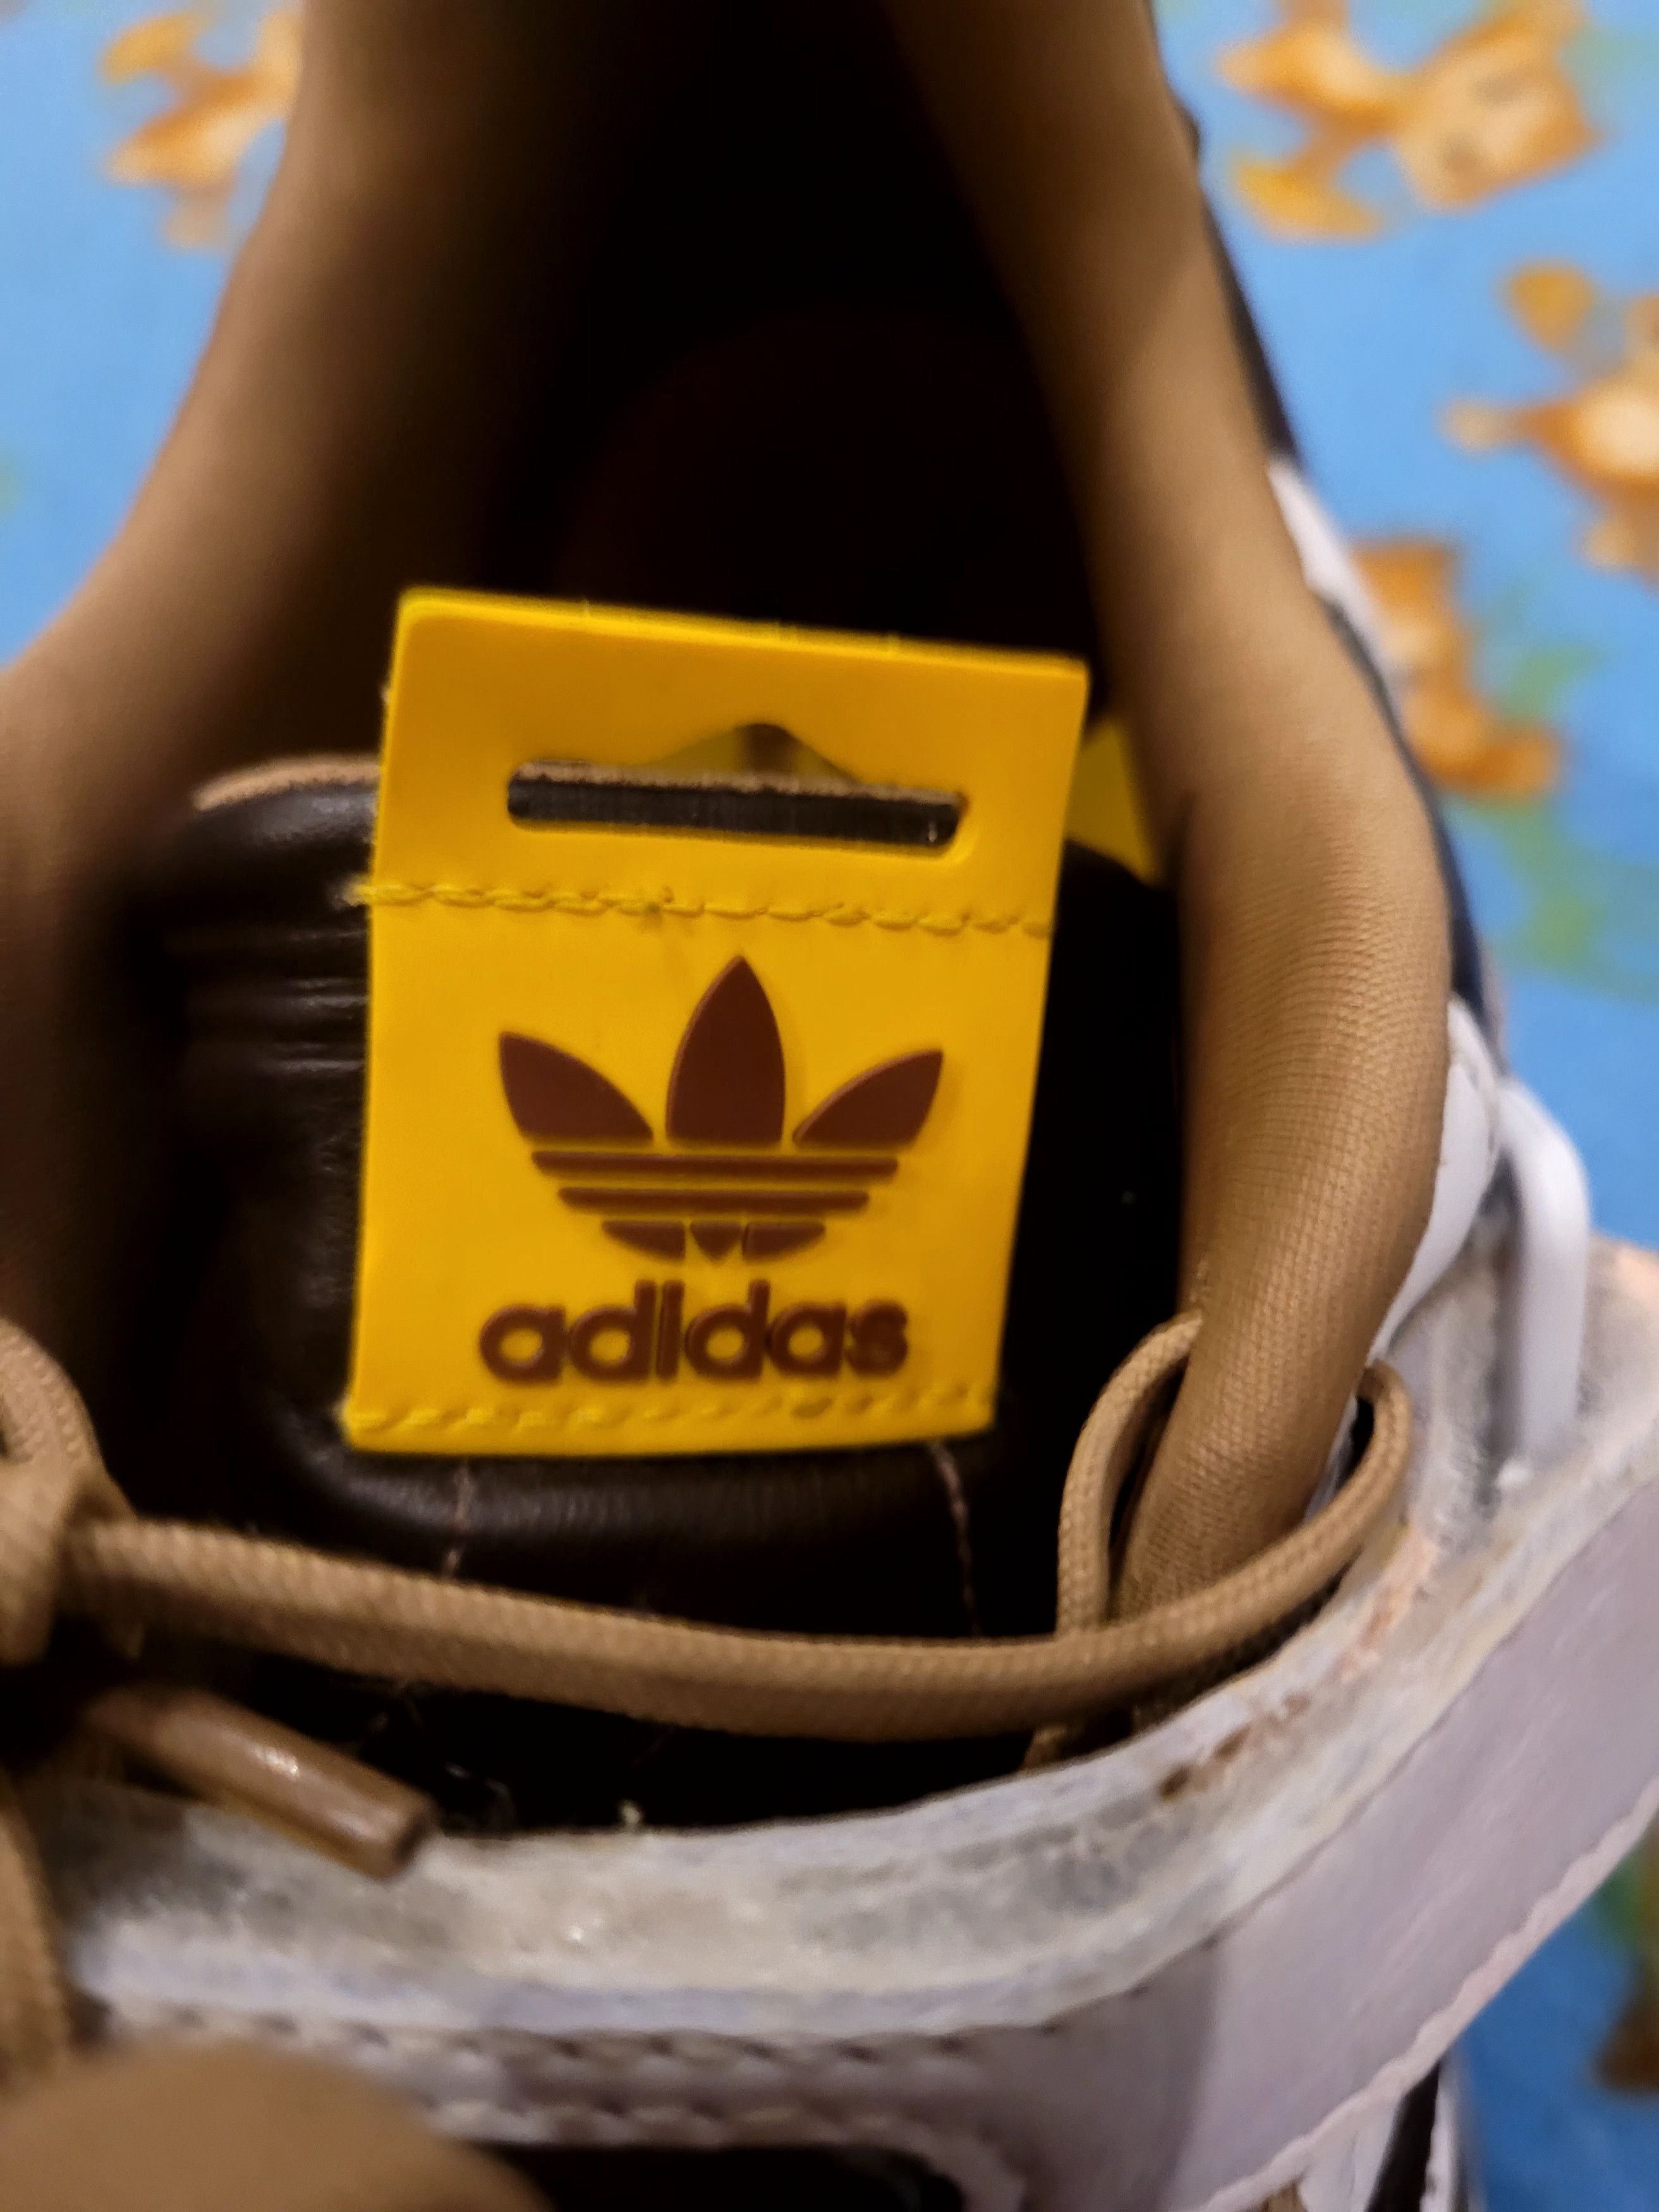 Adidas Adidas Forum x M&m's white/ brown Size US 11 / EU 44 - 7 Thumbnail